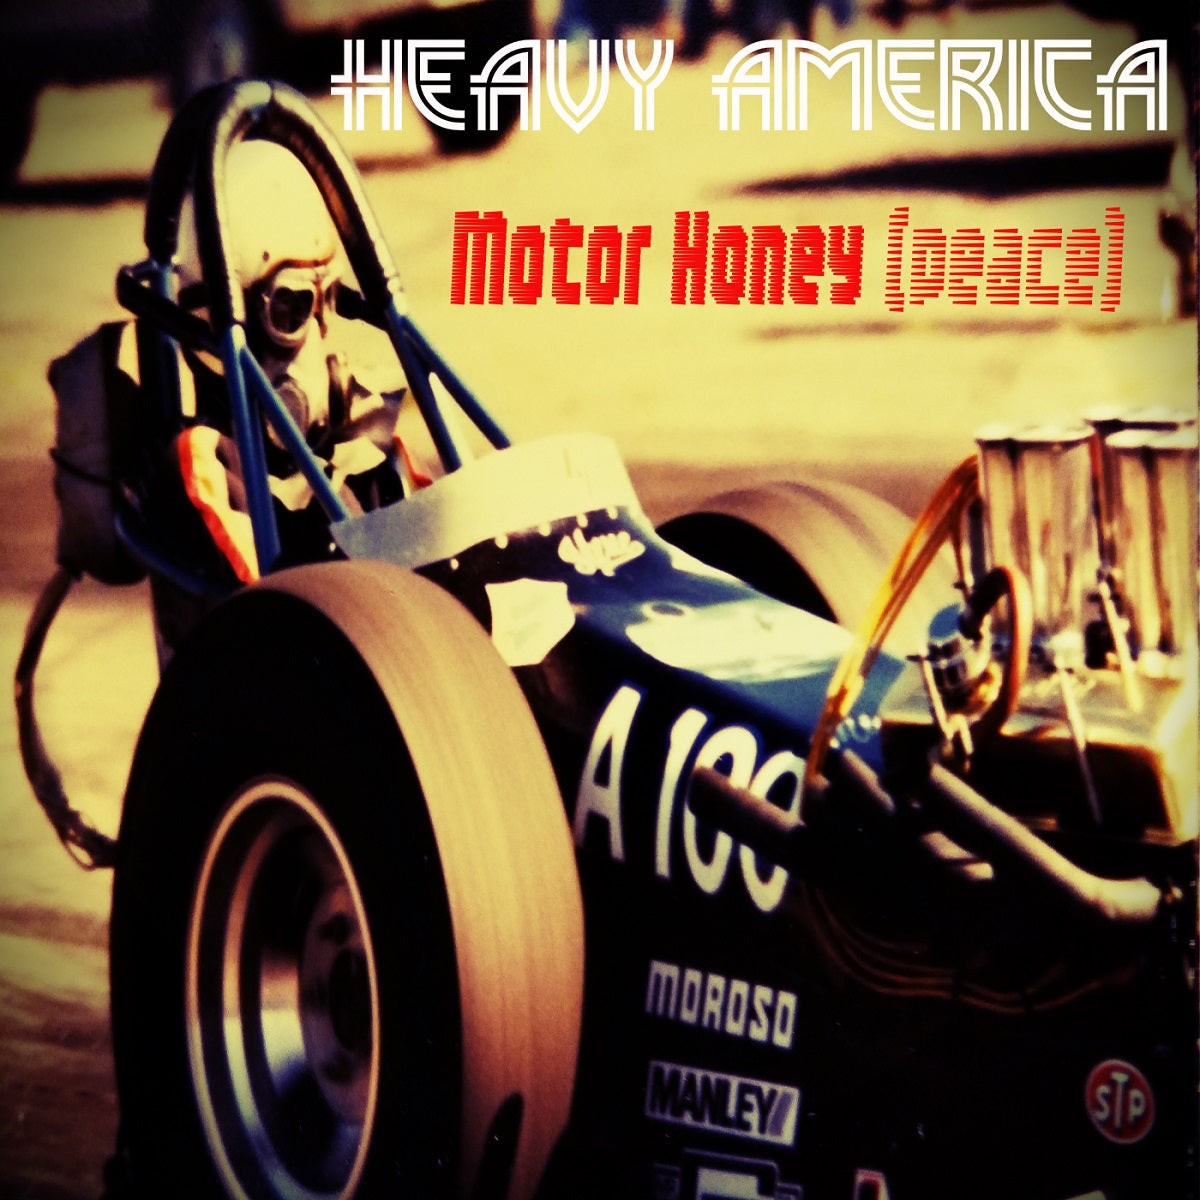 Heavy AmericA – ‘Motor Honey (Peace)’